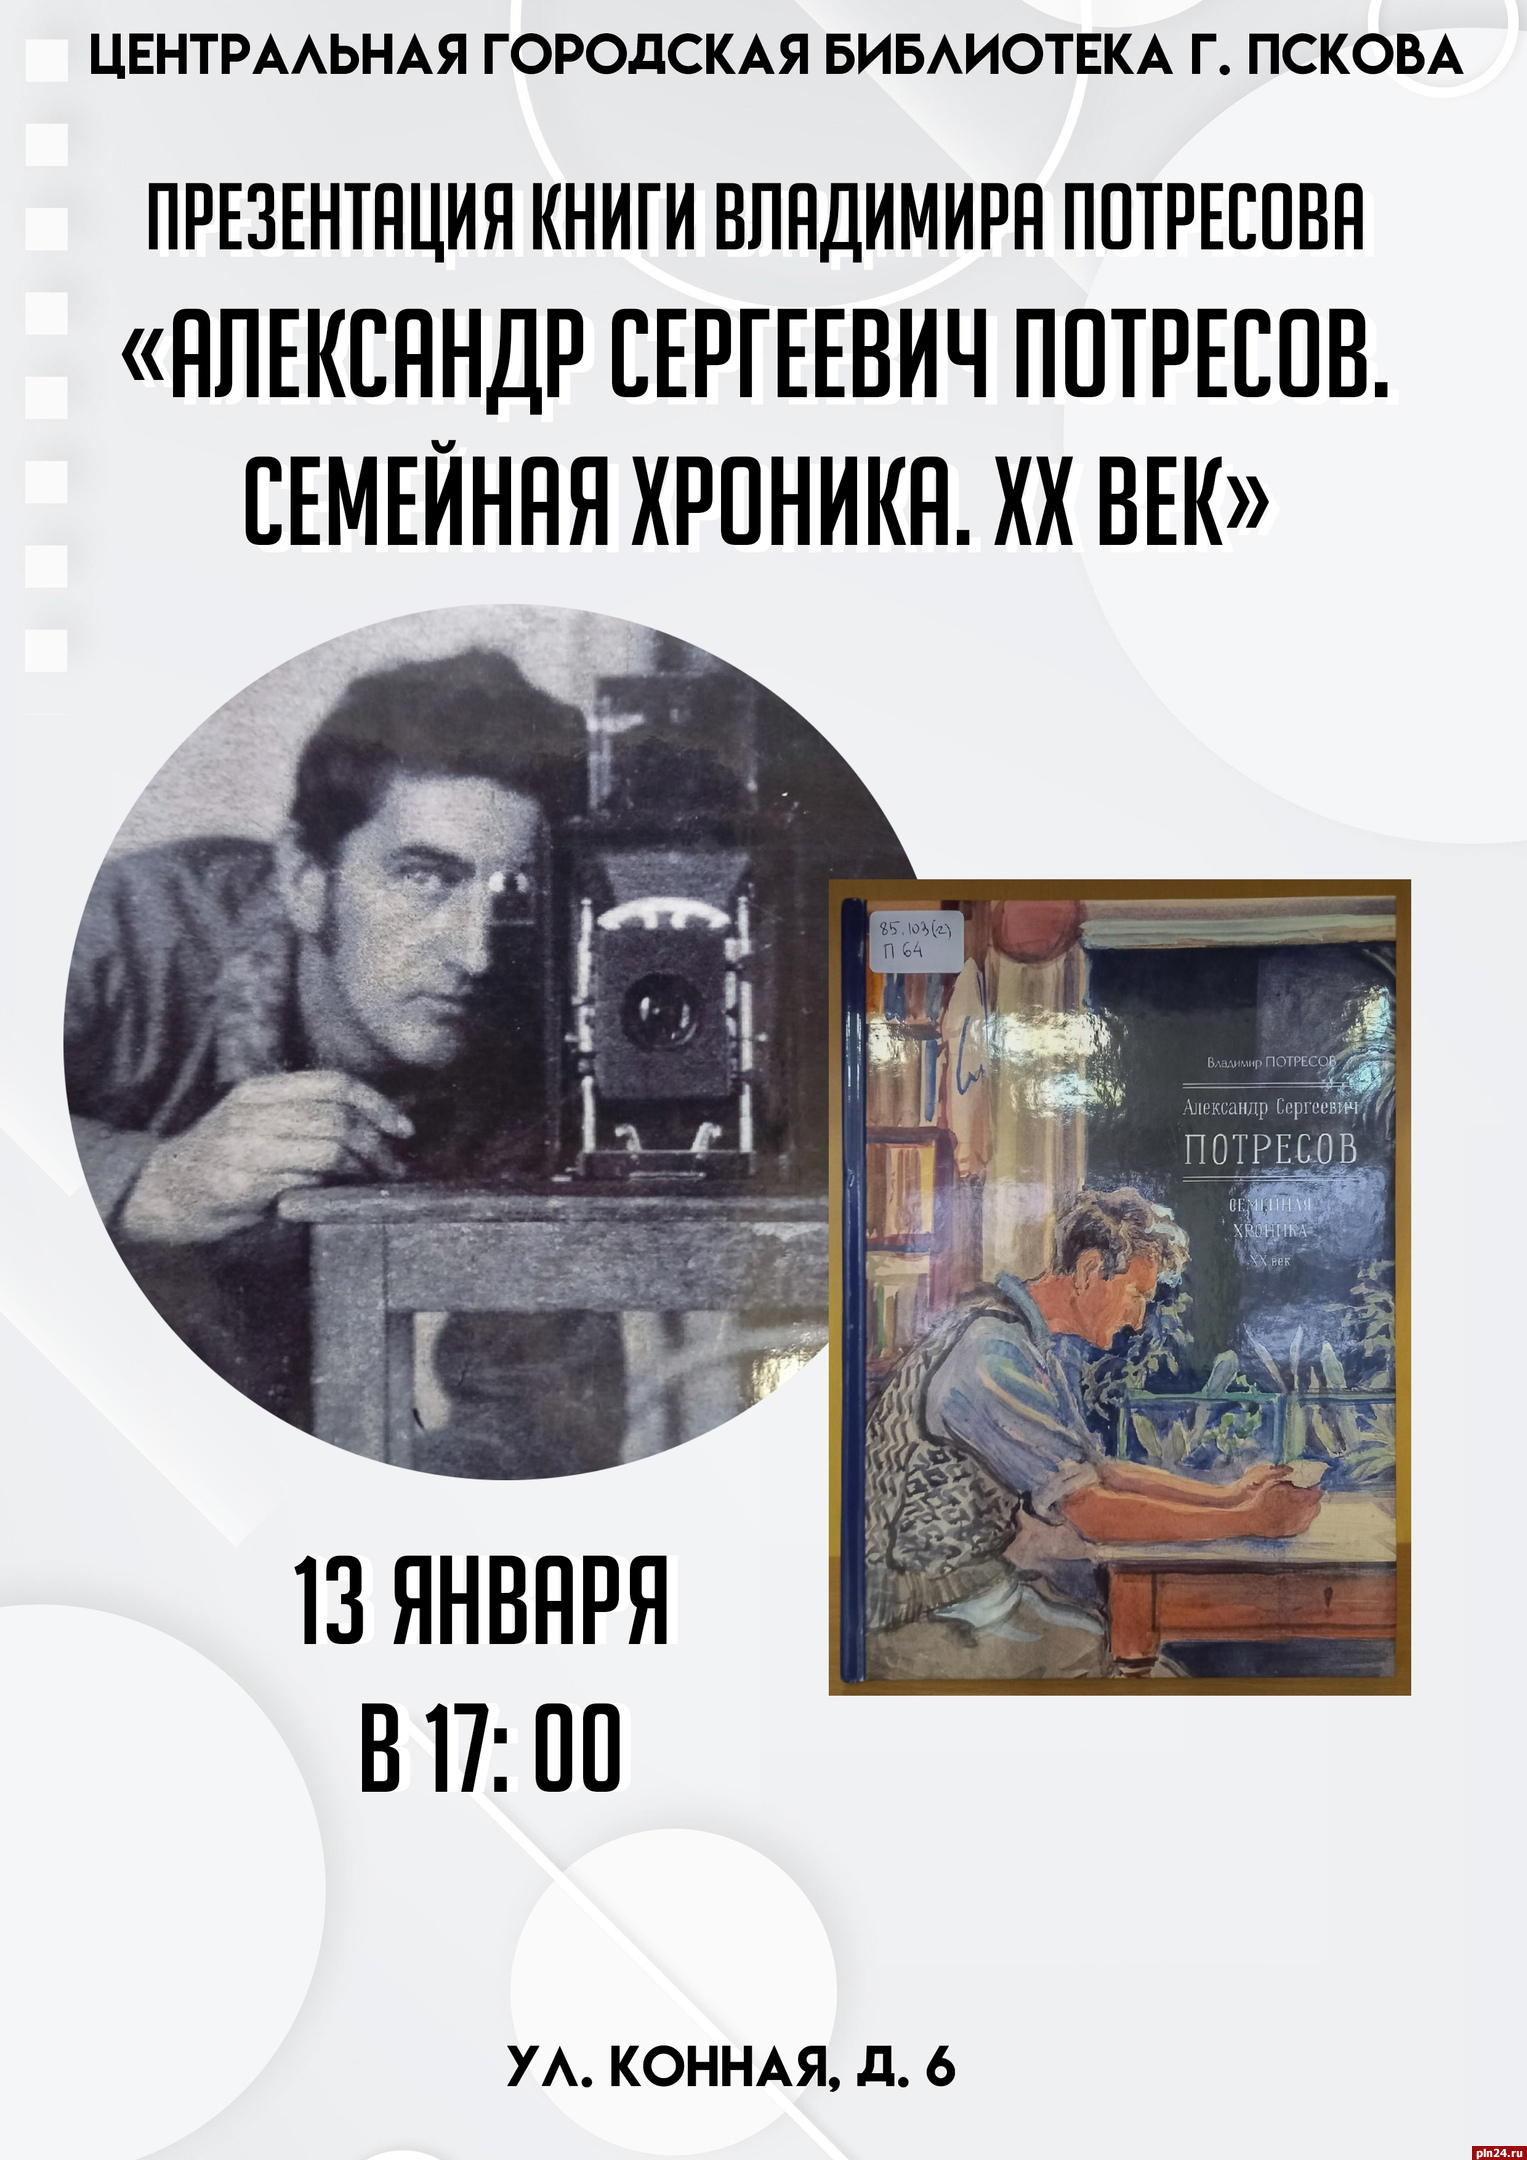 Презентация книги Владимира Потресова состоится в Пскове 13 января